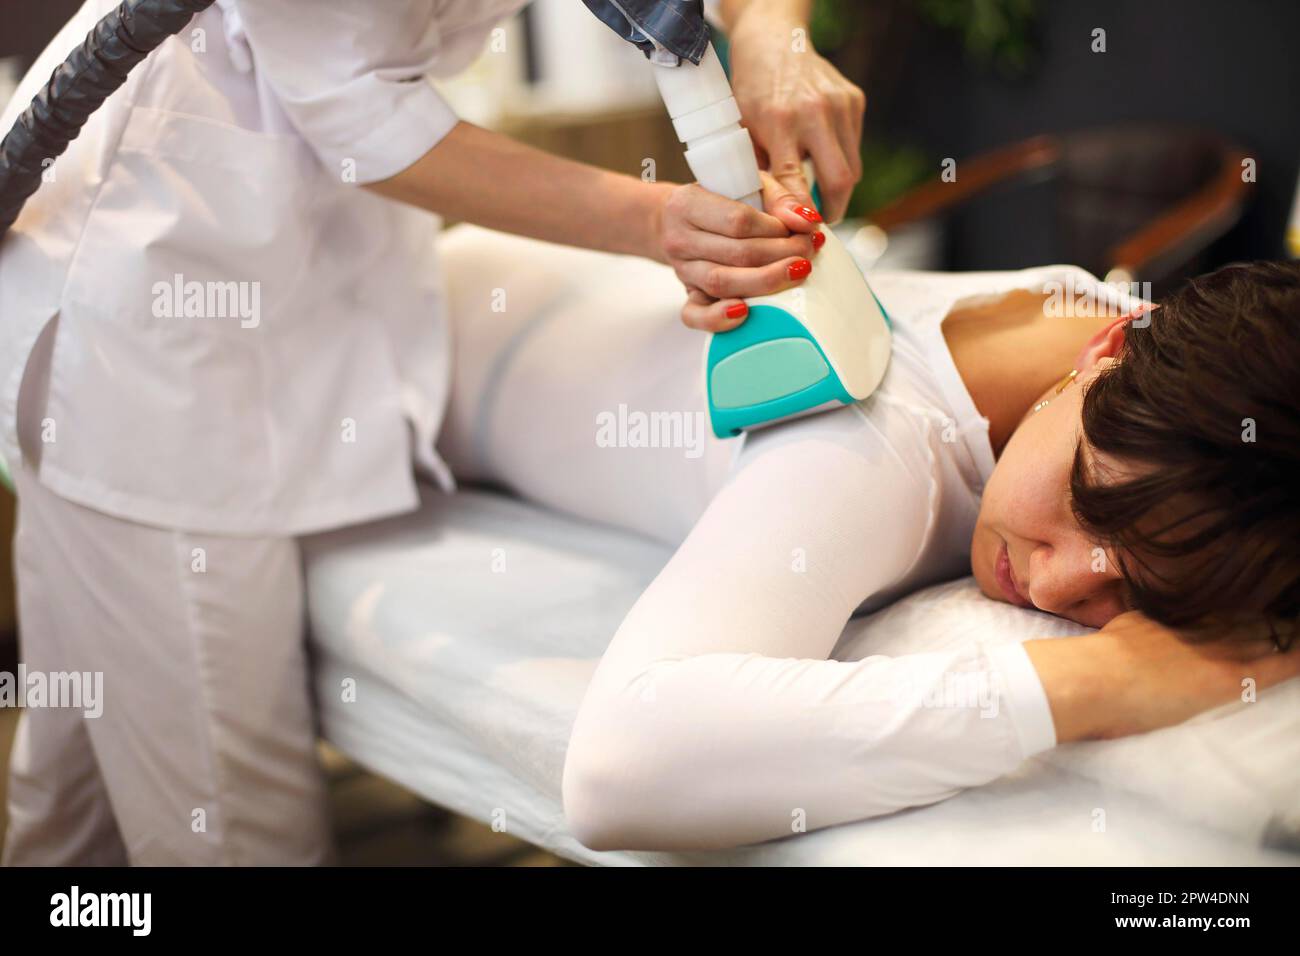 Gesichtslose Kosmetikerin, die Flüssiggas-Schlankheits-Apparate am weiblichen Körper verwendet Klient in weißem Anzug, der auf der Couch liegt Stockfoto